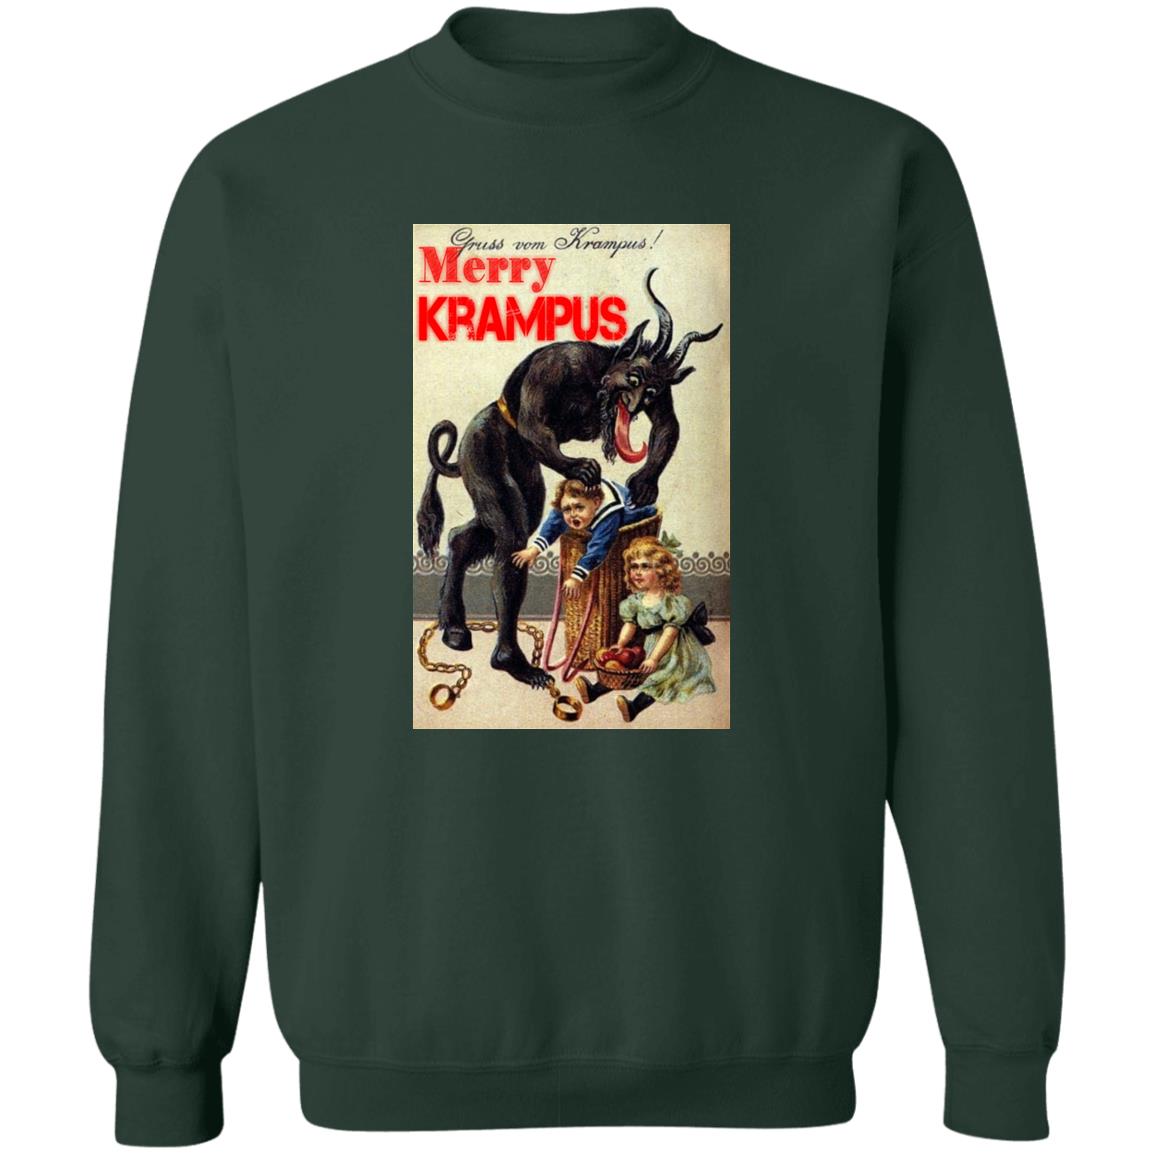 Merry Krampus Sweatshirt, Krampus Shirt, Evil Christmas Sweatshirt, Anti Christmas shirt, Merry Krampus, Bad Santa shirt, Christmas Horror shirt, gift